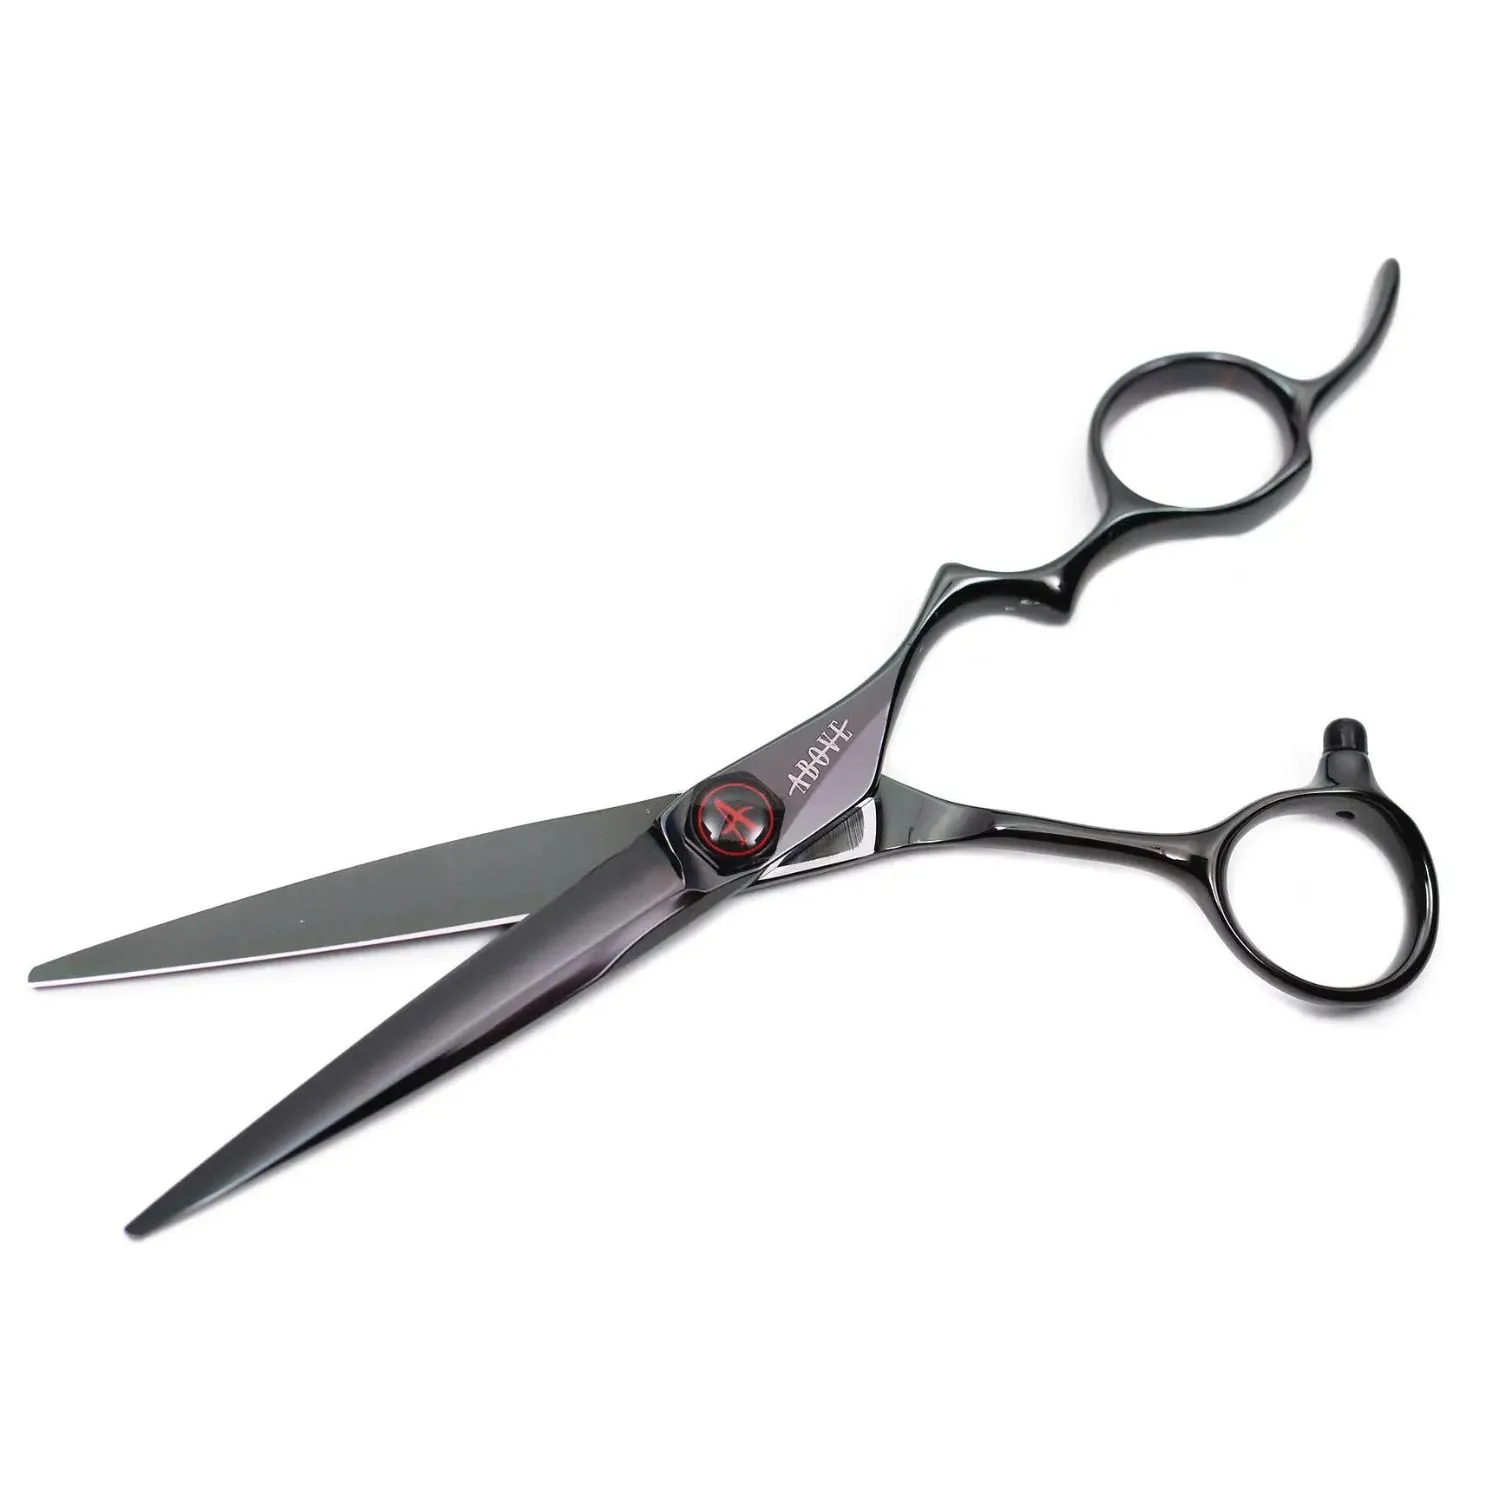 Meilleur ciseaux coiffure professionnel  Above Ergo Black 6.75  (C10-675BK) - Scissors Master